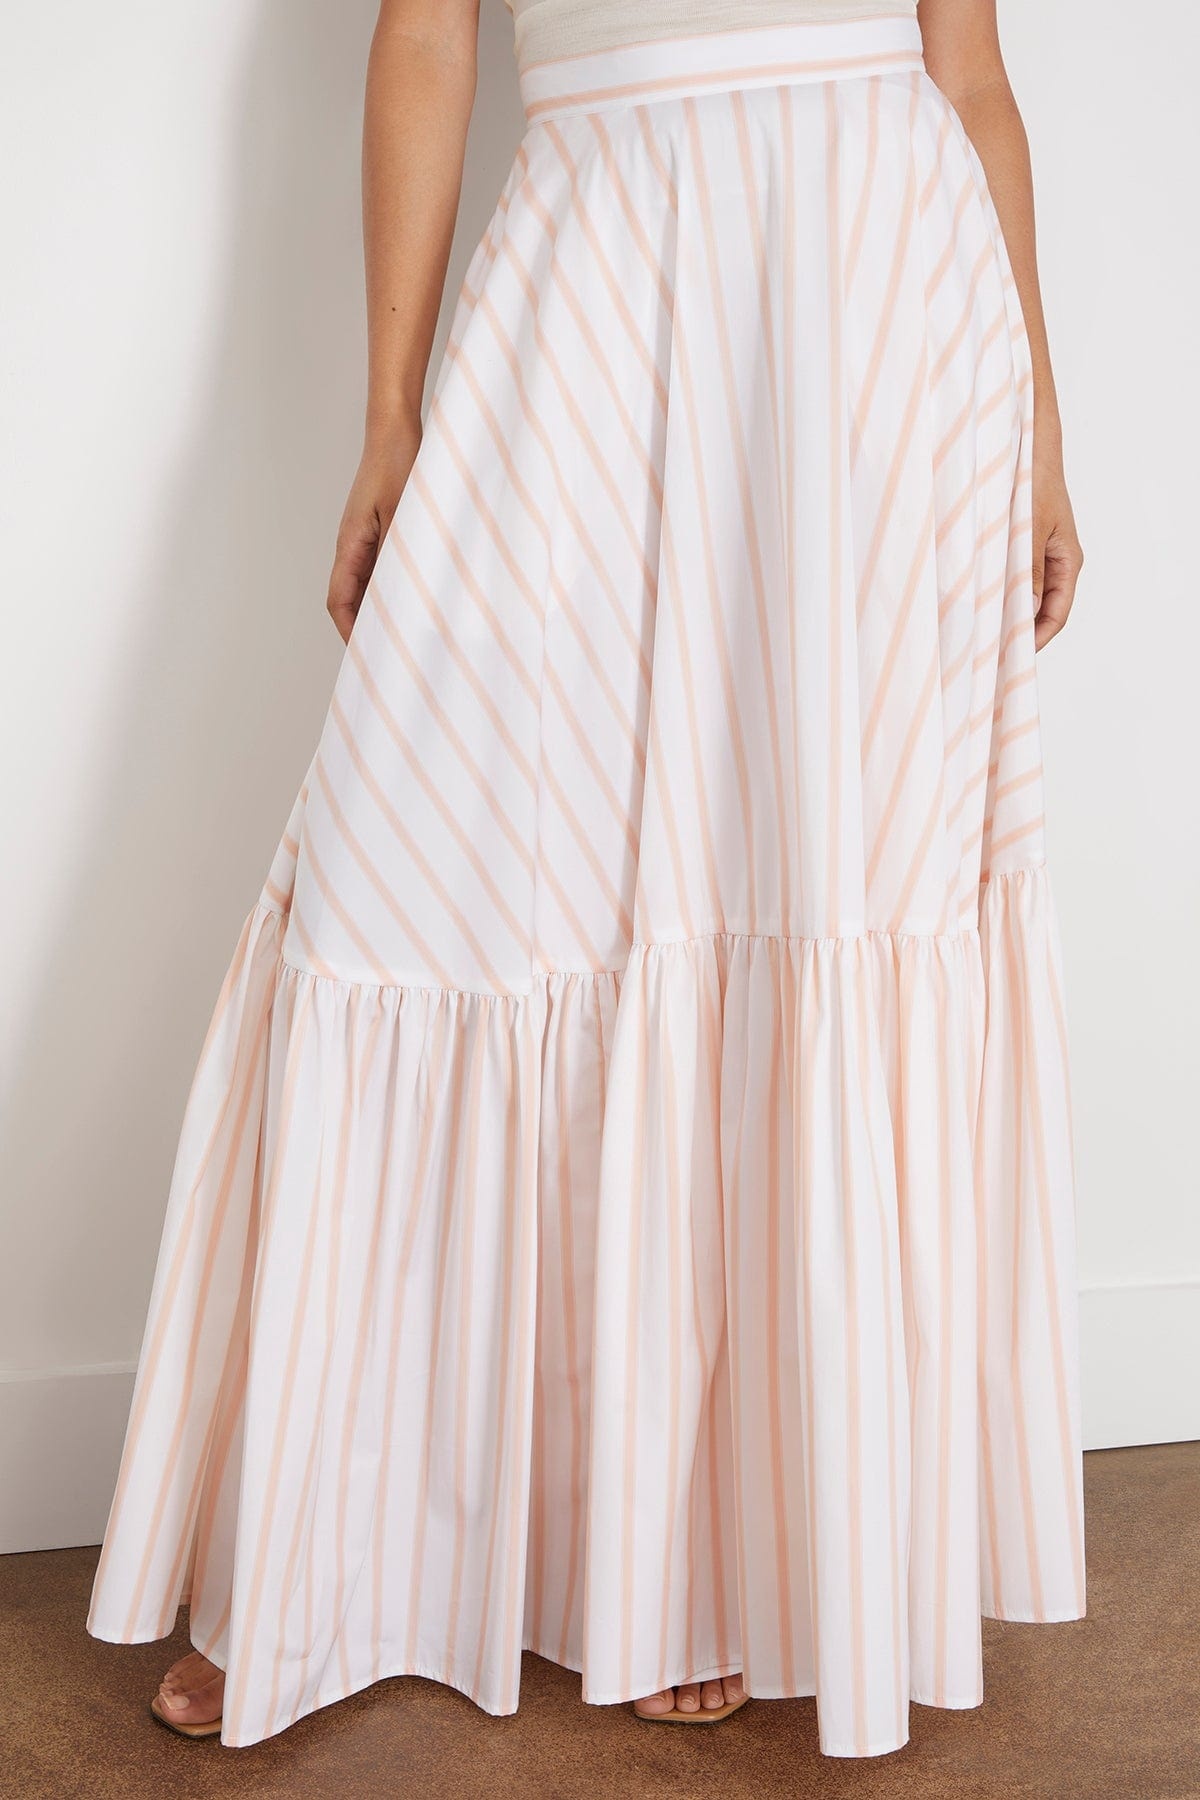 Long Skirt in Bellini Stripe - 3